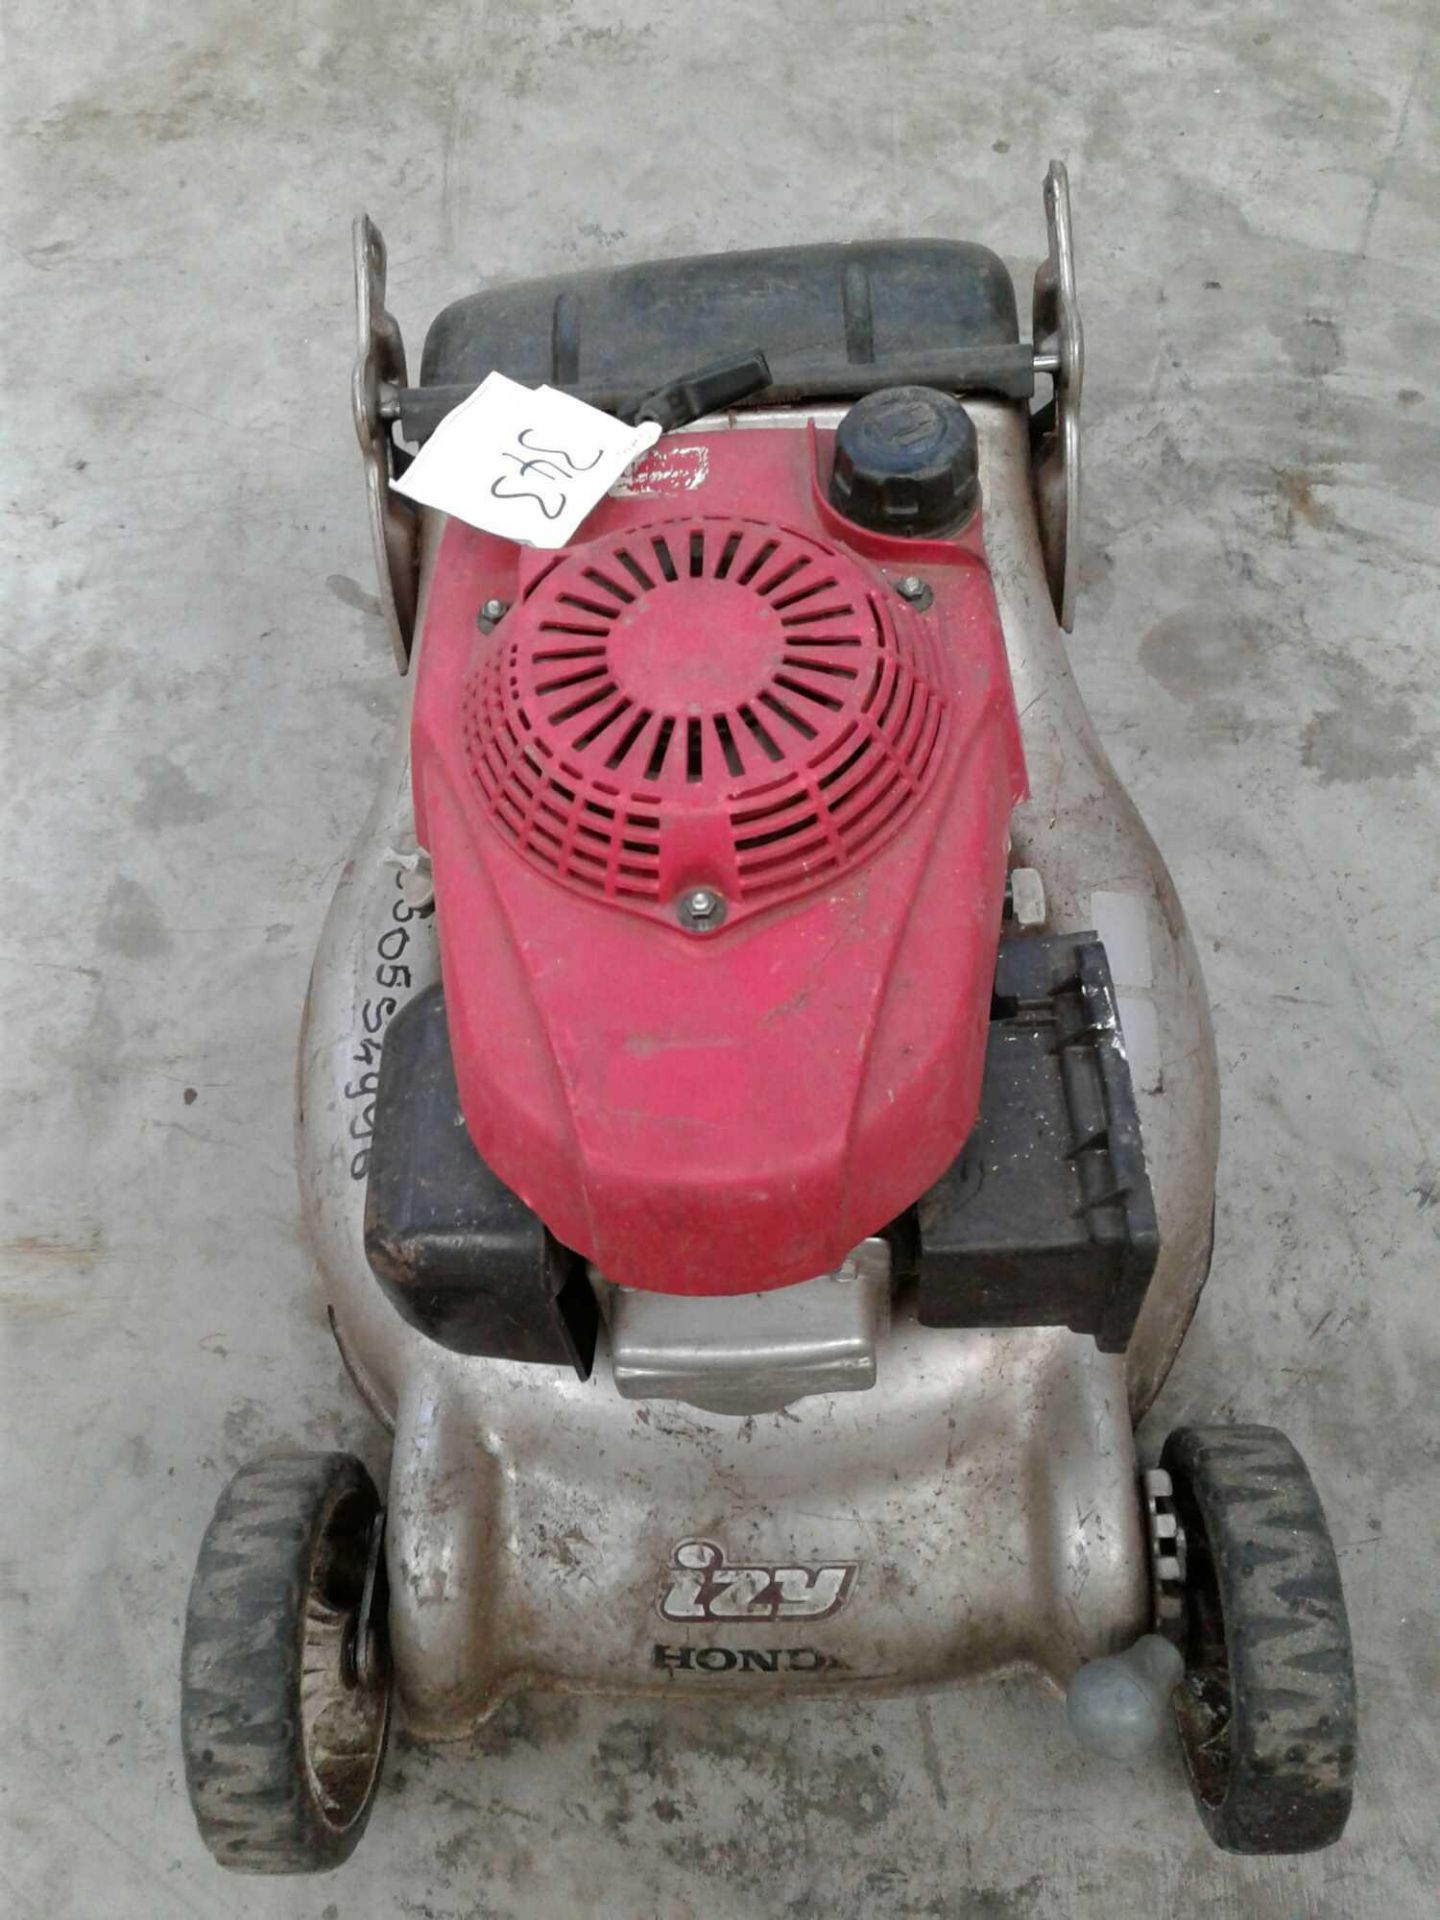 Honda petrol mower - Image 2 of 2